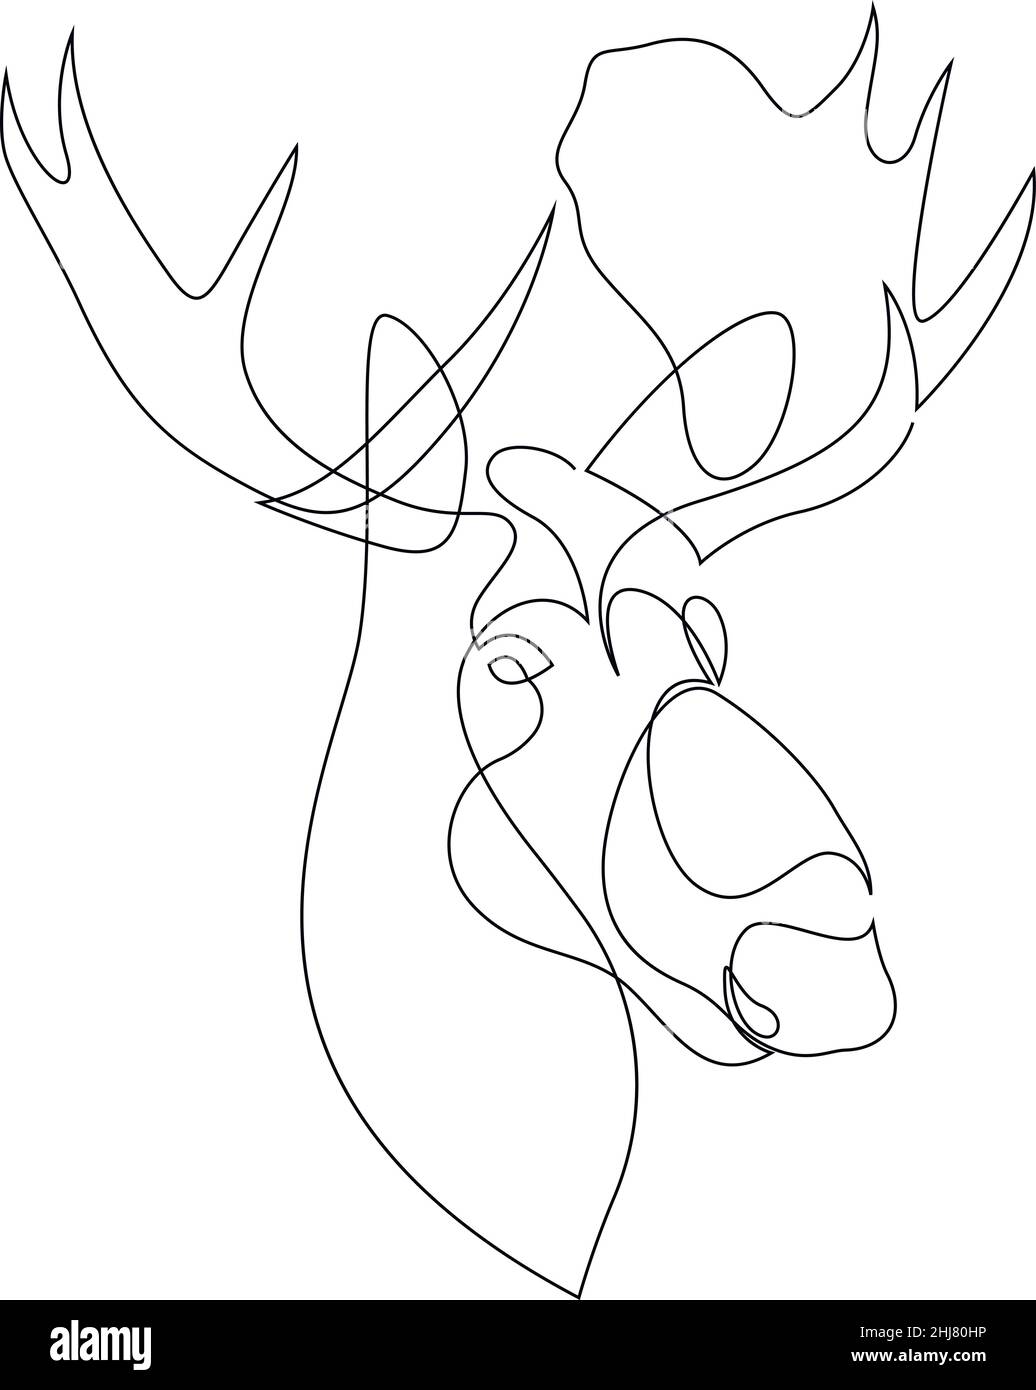 La testa alce. Elk. Un ritratto disegnato a mano di un'alce in una linea. Doodle. Illustrazione vettoriale Illustrazione Vettoriale